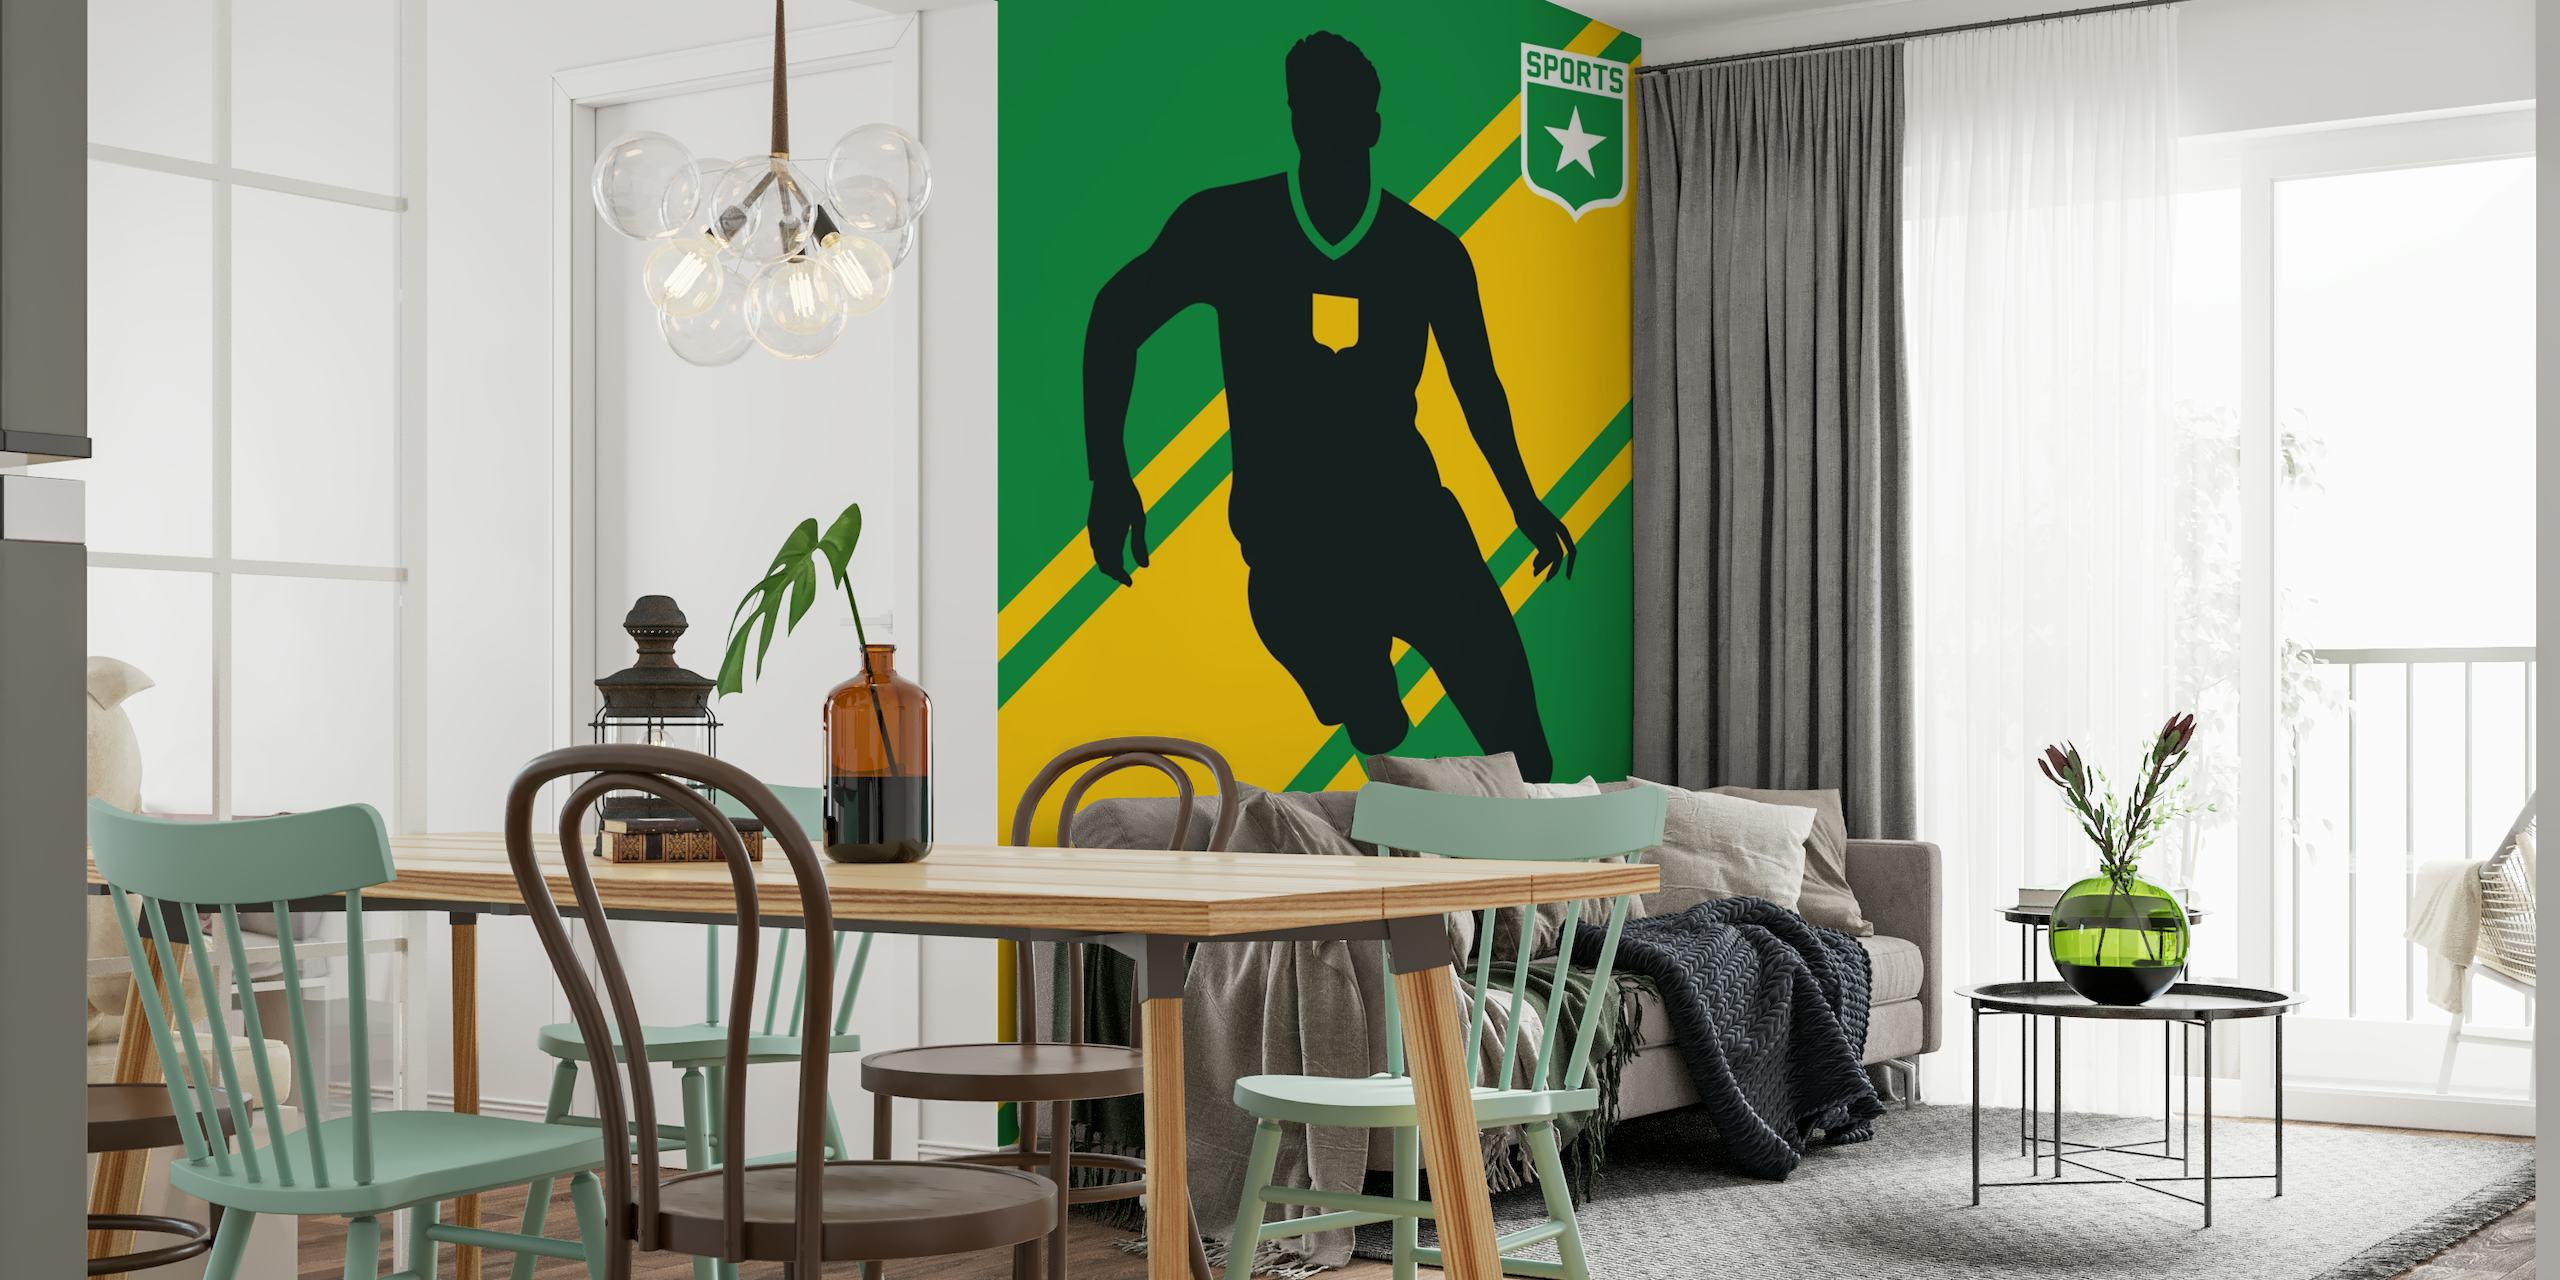 Silhouet van een voetballer met een bal op een groen en geel gestreepte achtergrond